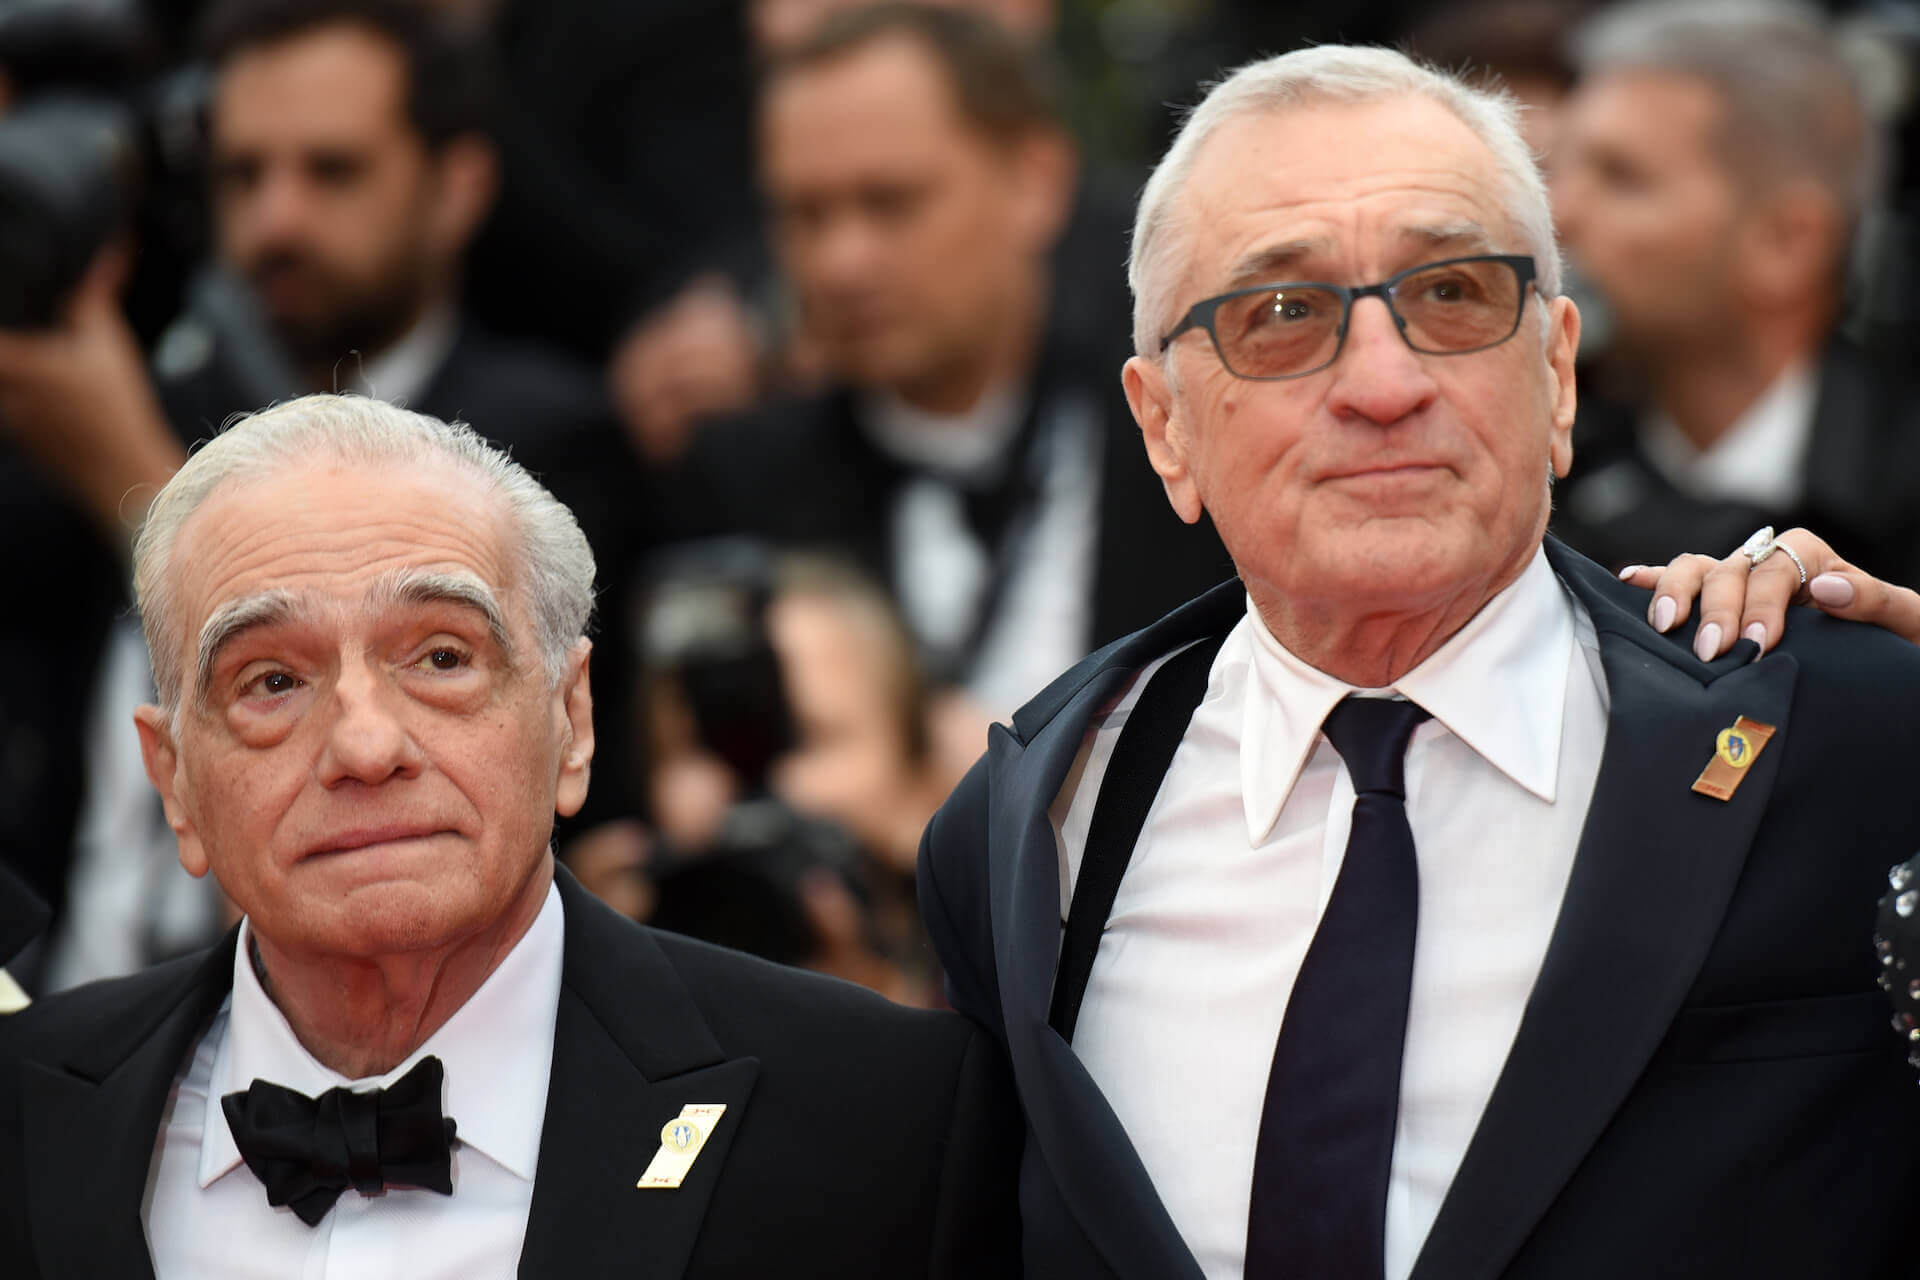 Martin Scorsese, Robert De Niro